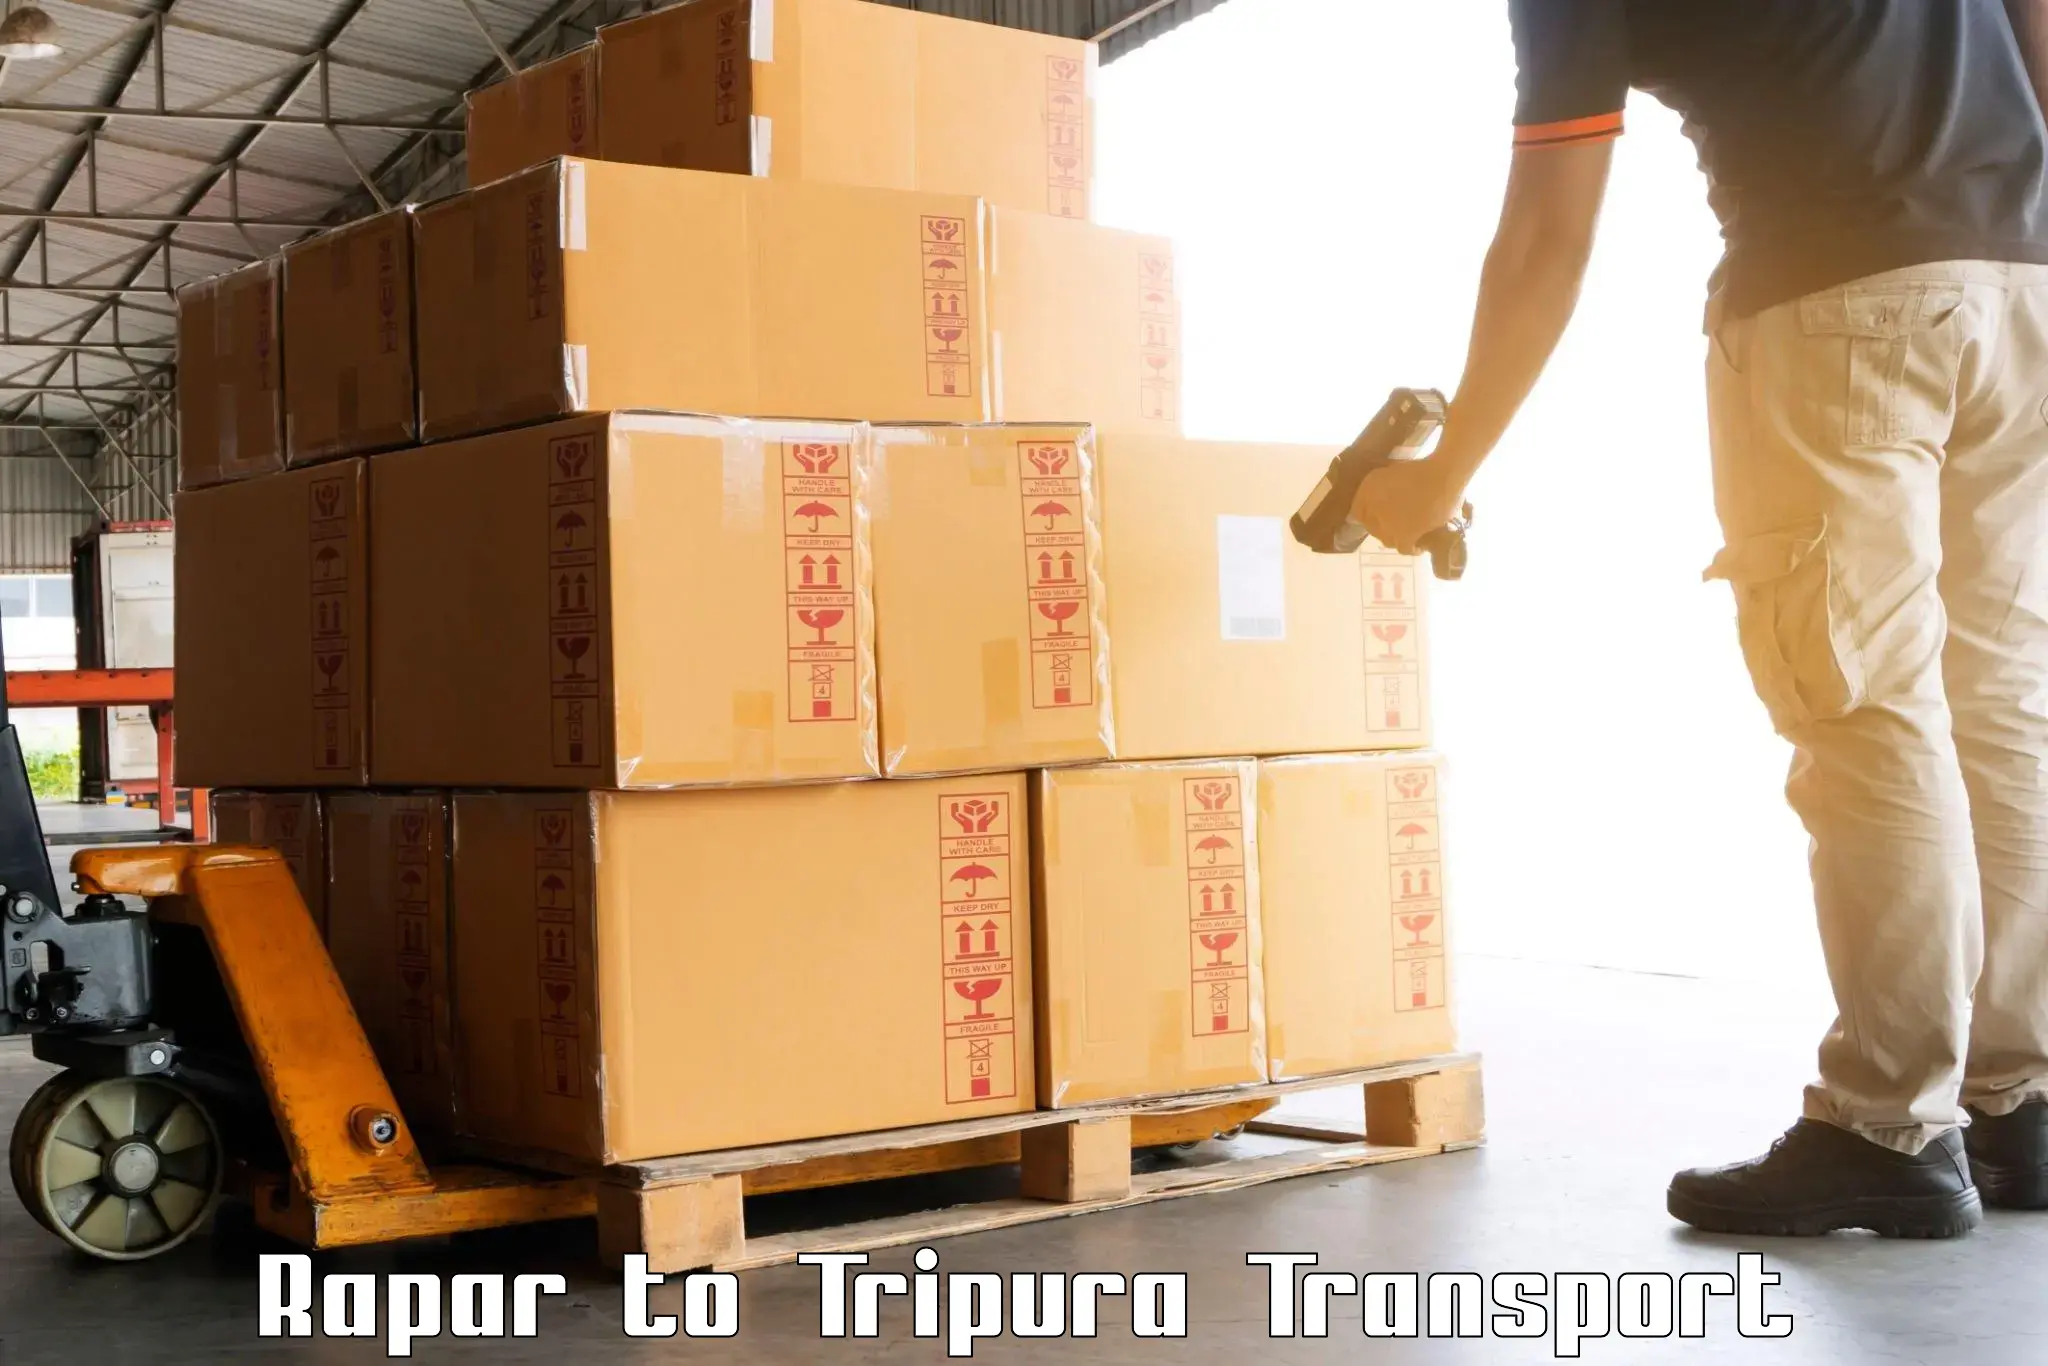 Nearest transport service Rapar to Amarpur